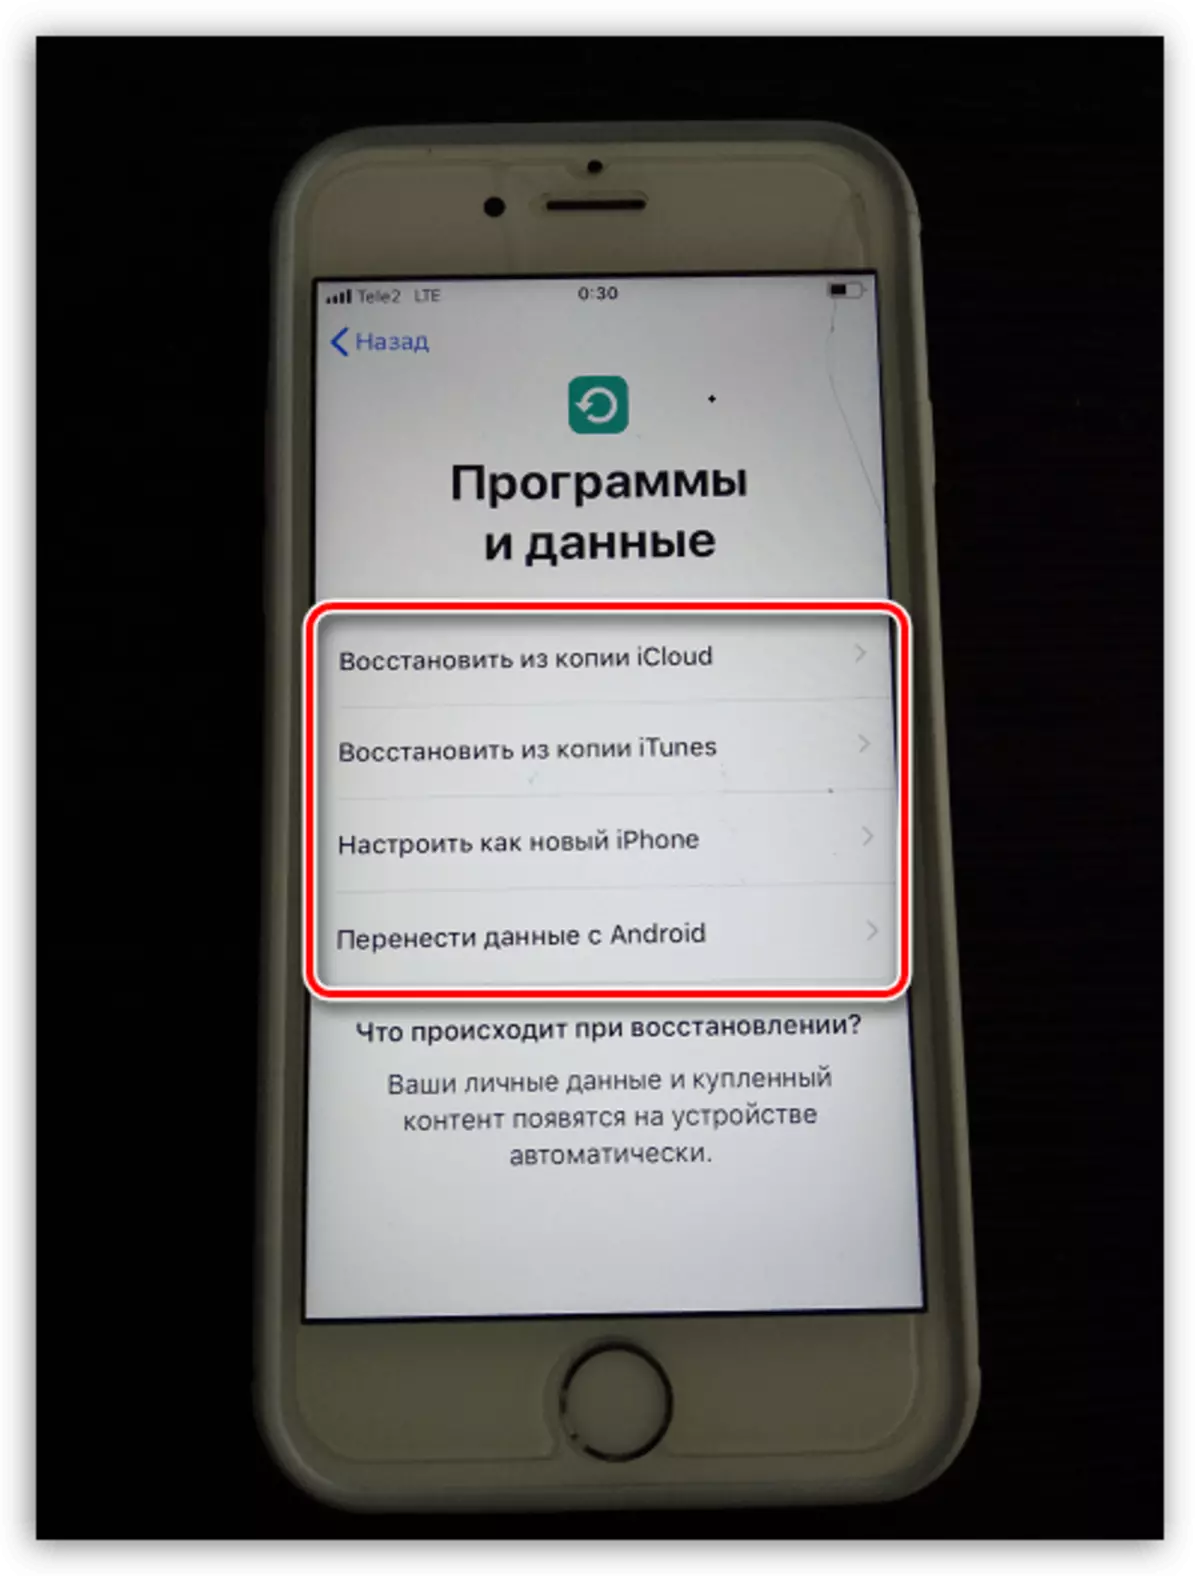 Selecció d'un mètode per a la instal·lació de la informació en l'iPhone